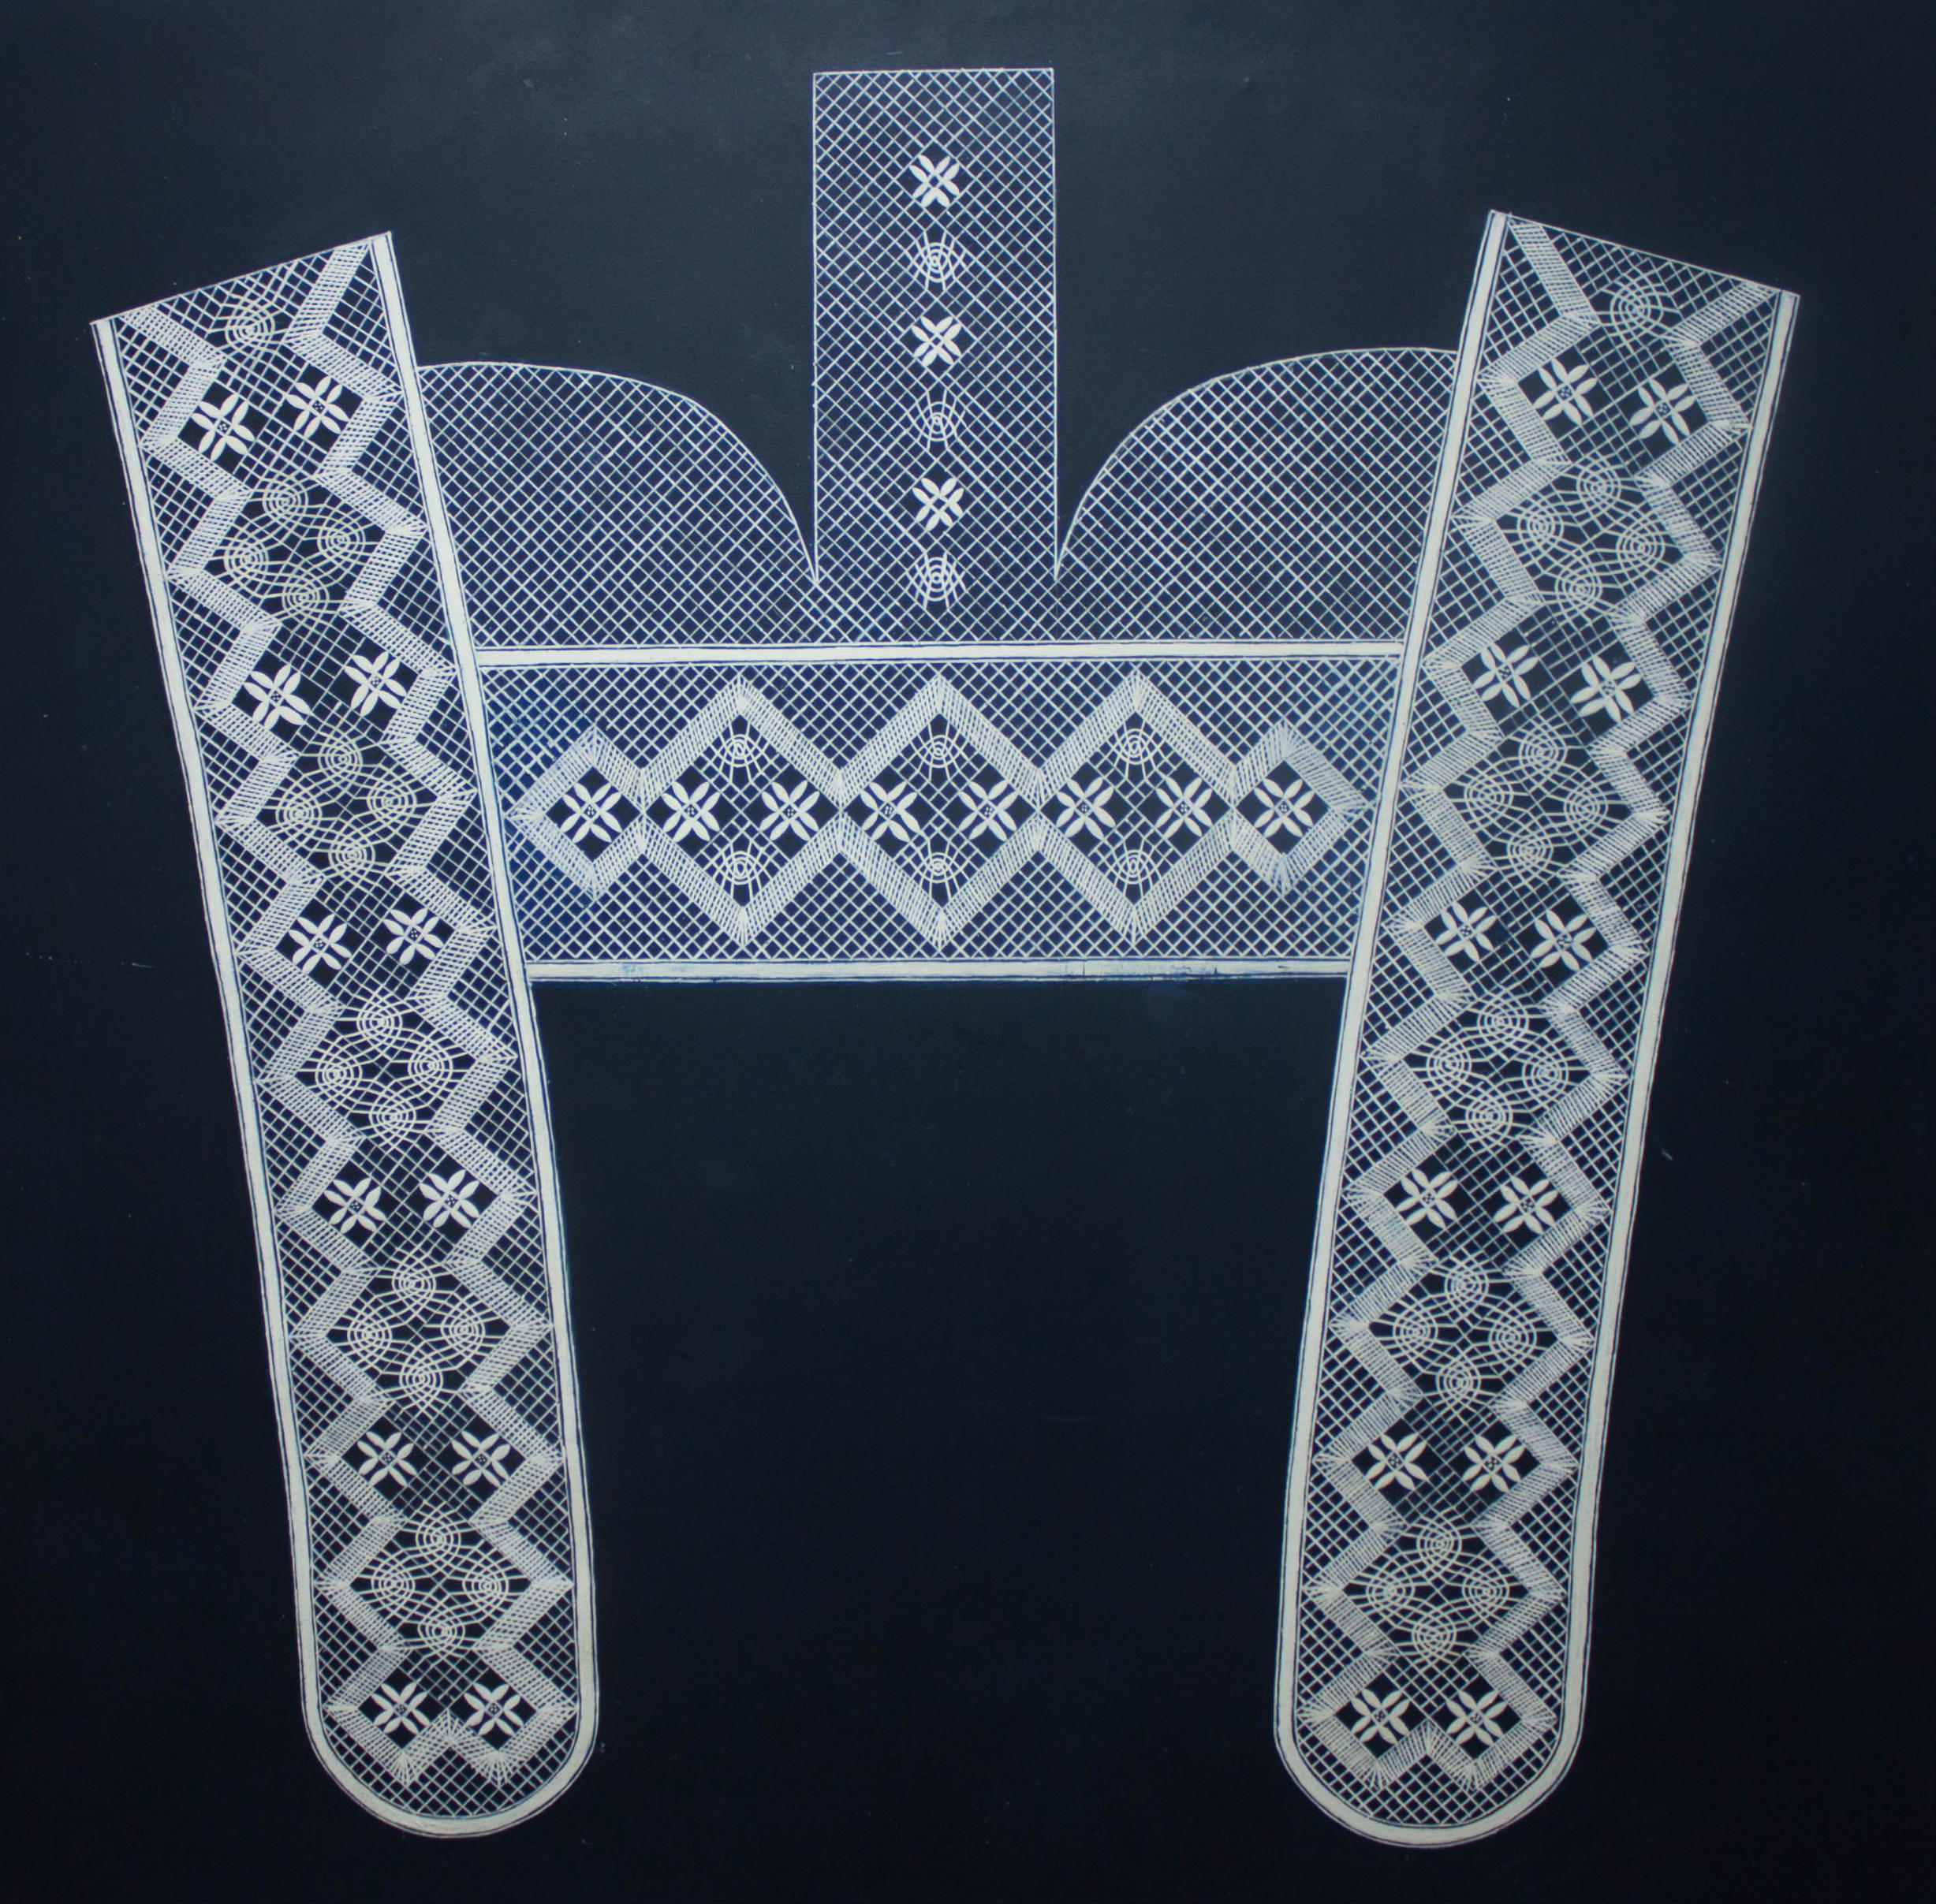 Проект кружевного капора «Журавинка» в многопарной технике плетения, автор – студент СПО Ямщикова А.А., 2016 г